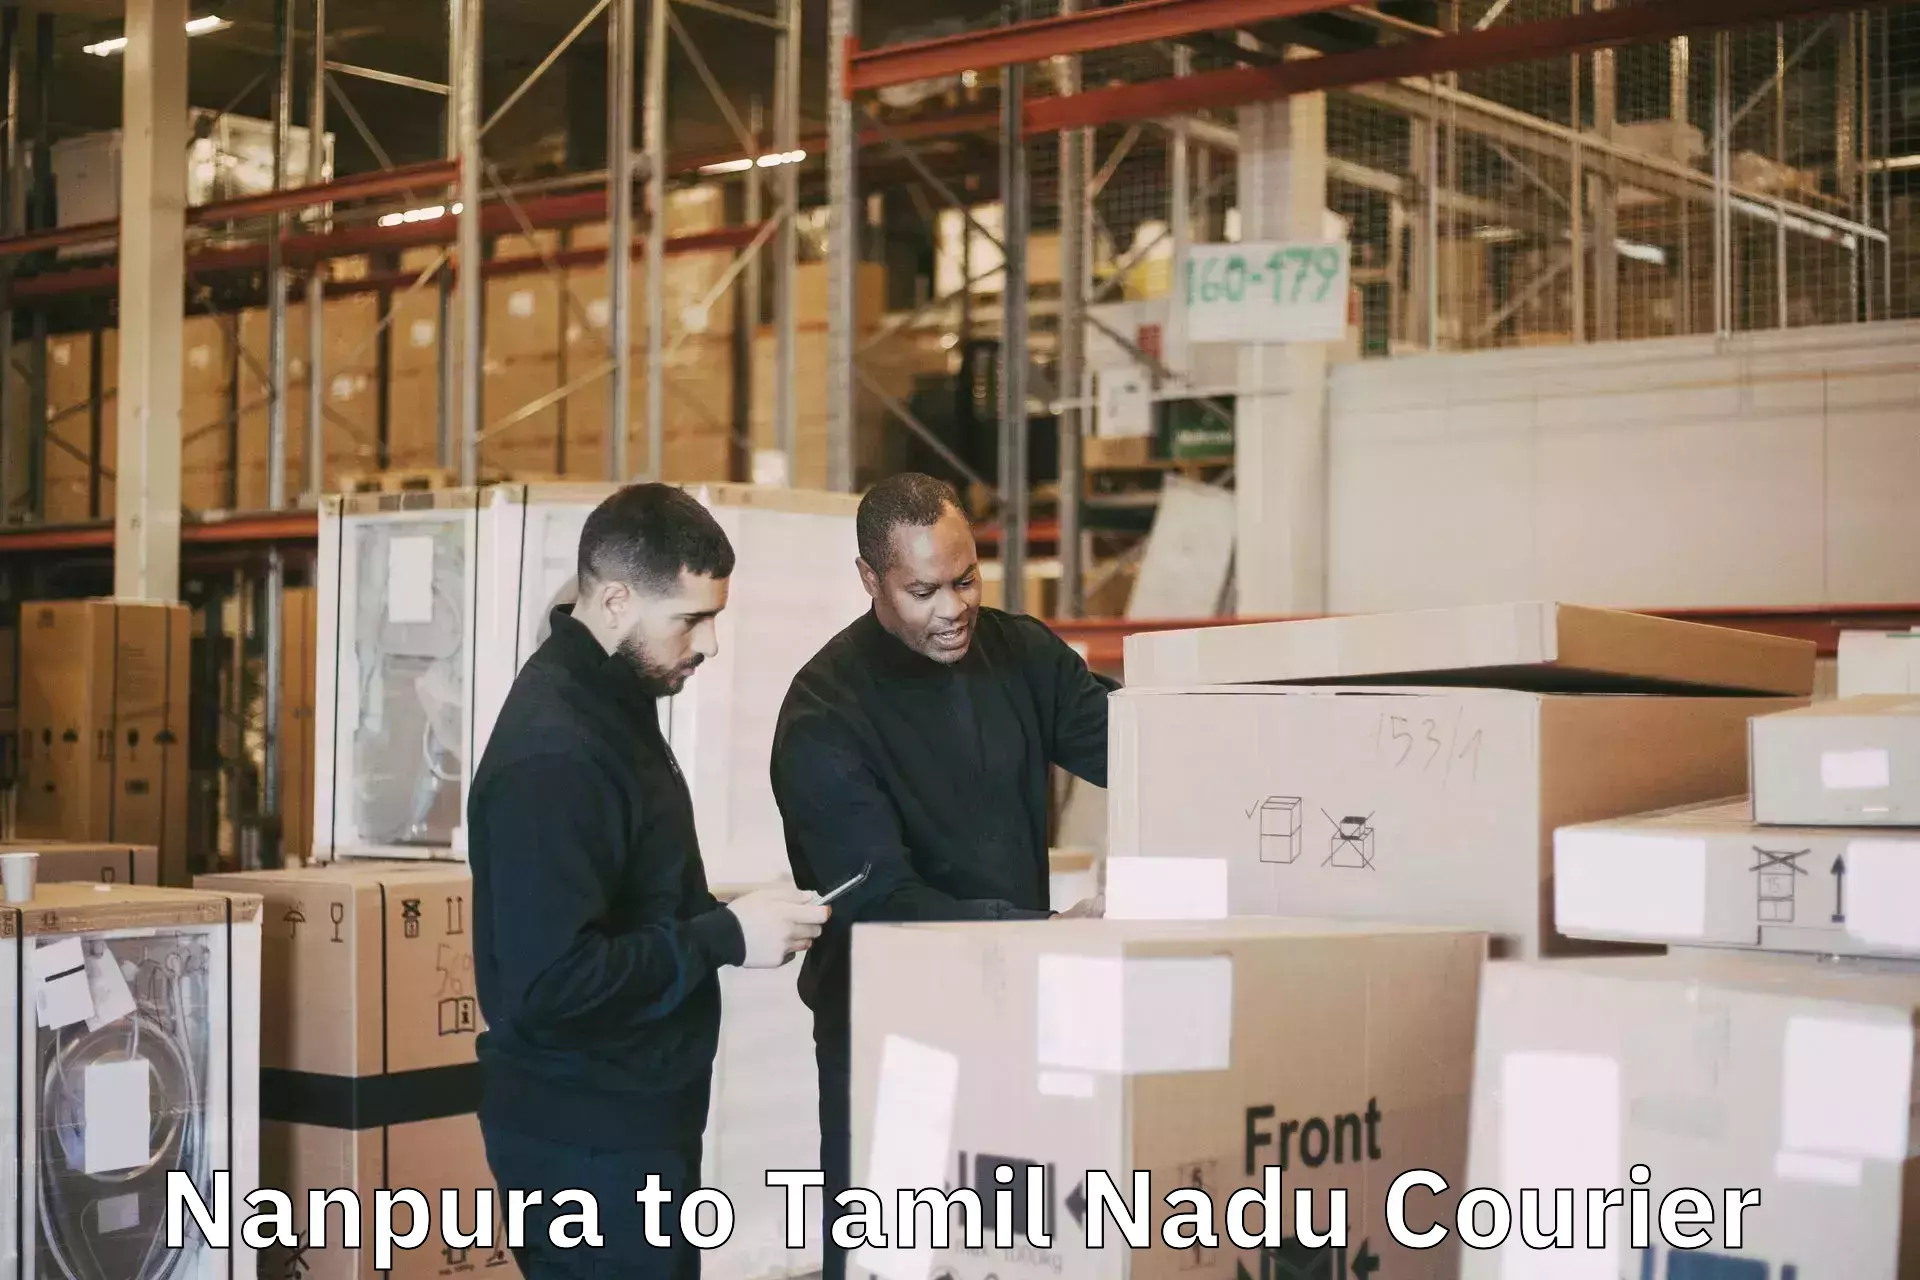 Door-to-door baggage service Nanpura to Tamil Nadu